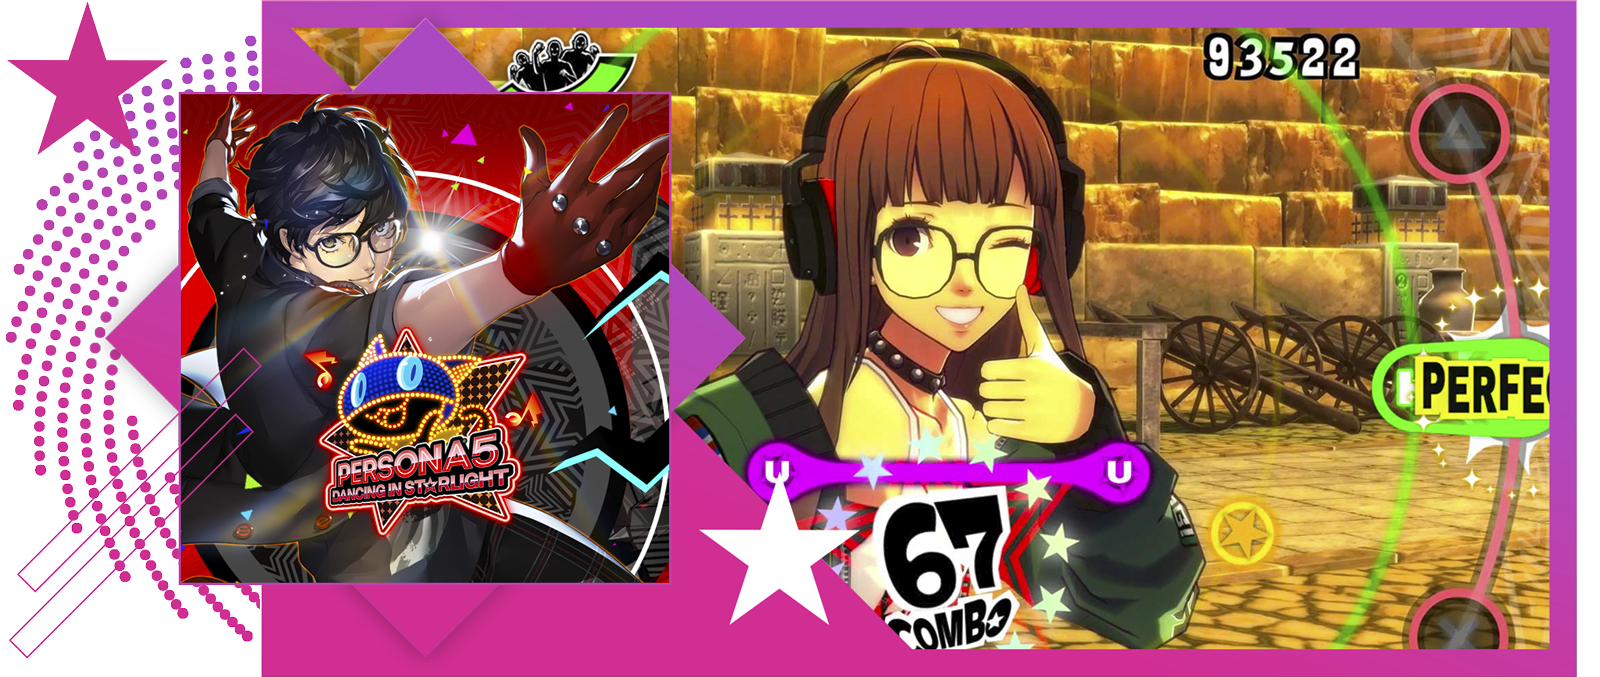 Nejlepší rytmické hry – obrázek s klíčovou grafikou a ukázkou ze hry Persona 5: Dancing in Starlight